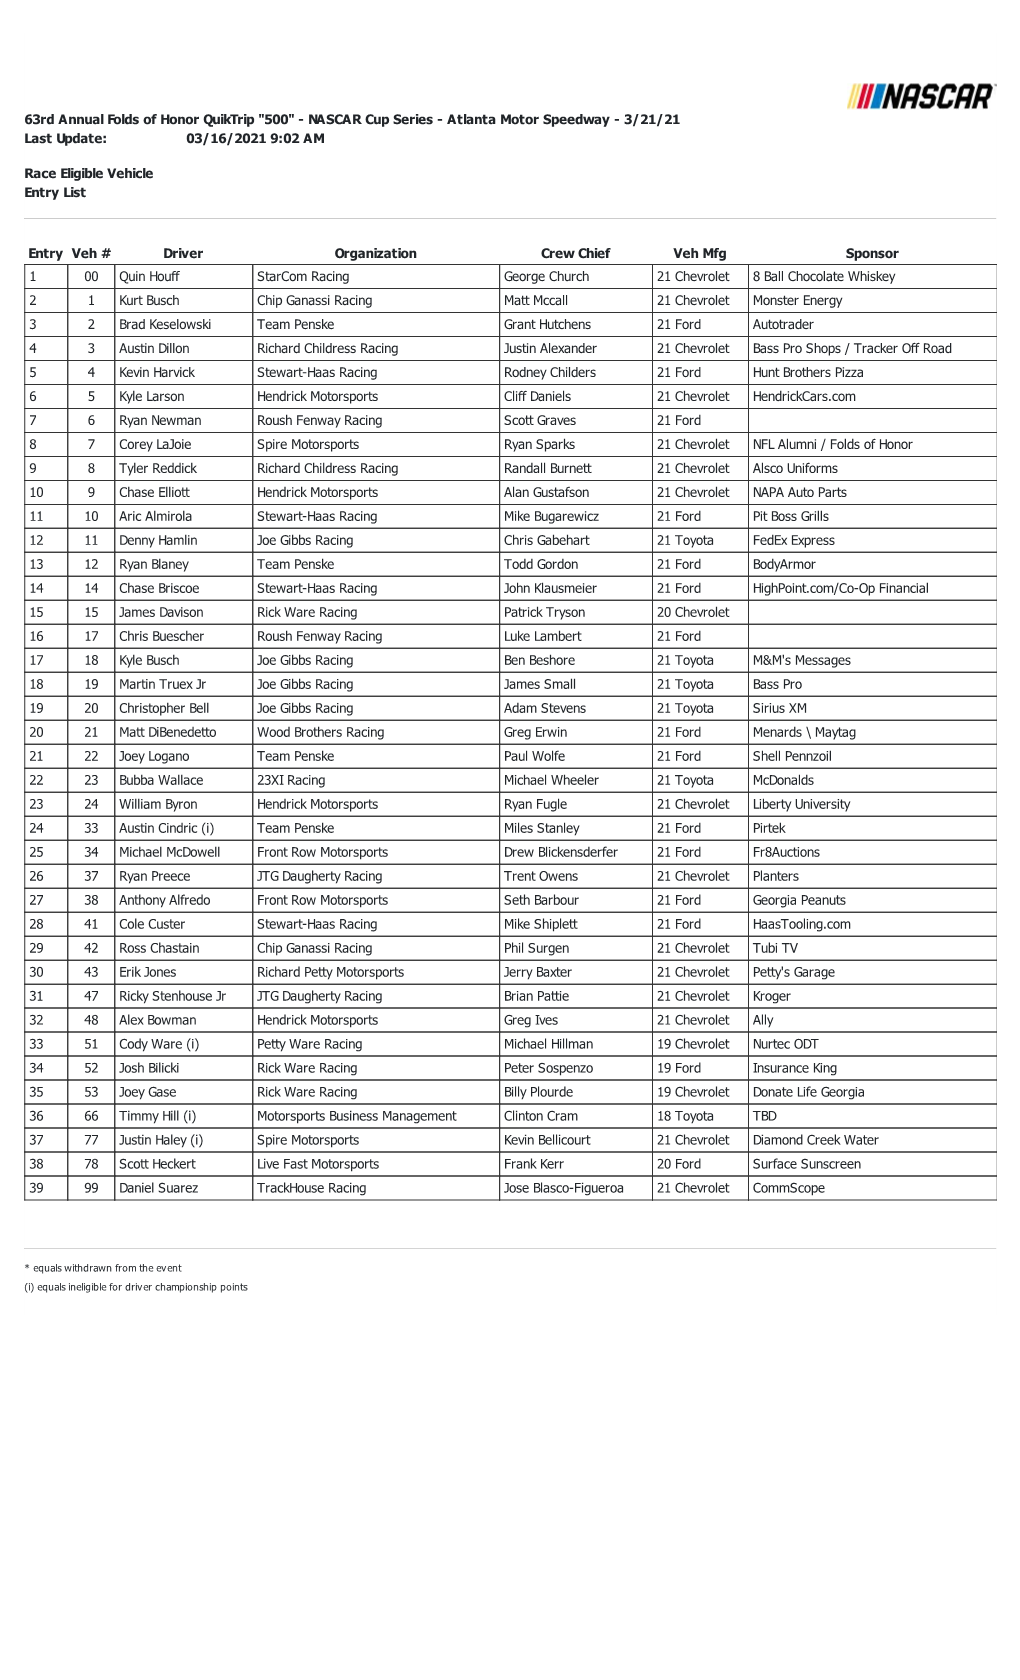 Atlanta Cup Entry List